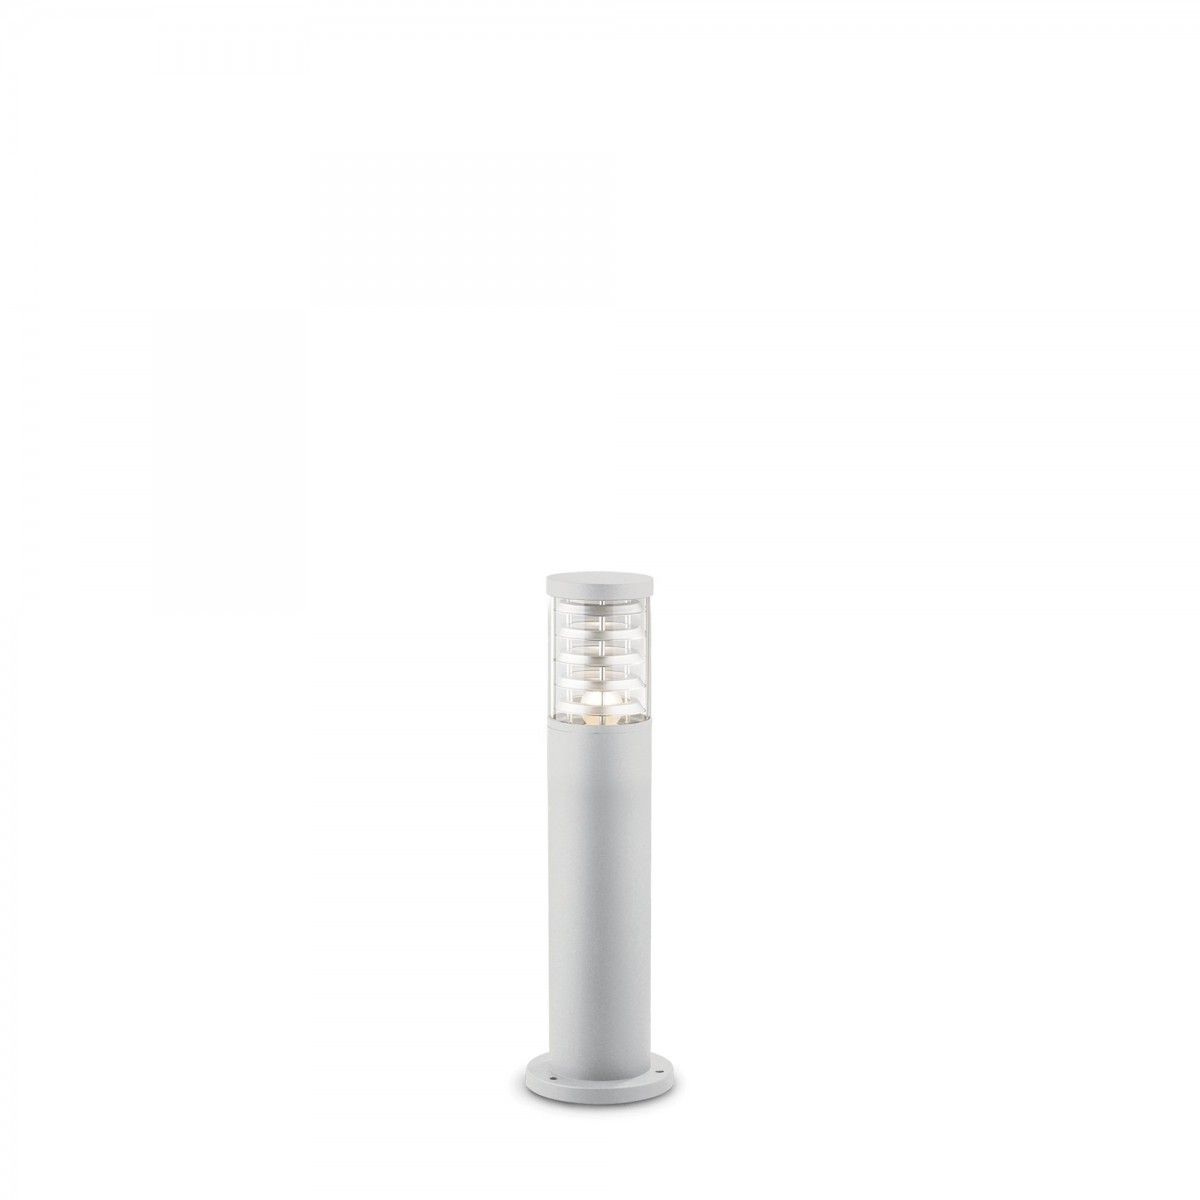 Ideal Lux 248264 vonkajšie stĺpikové svietidlo Tronco 1x60W | E27 | IP54 - biele